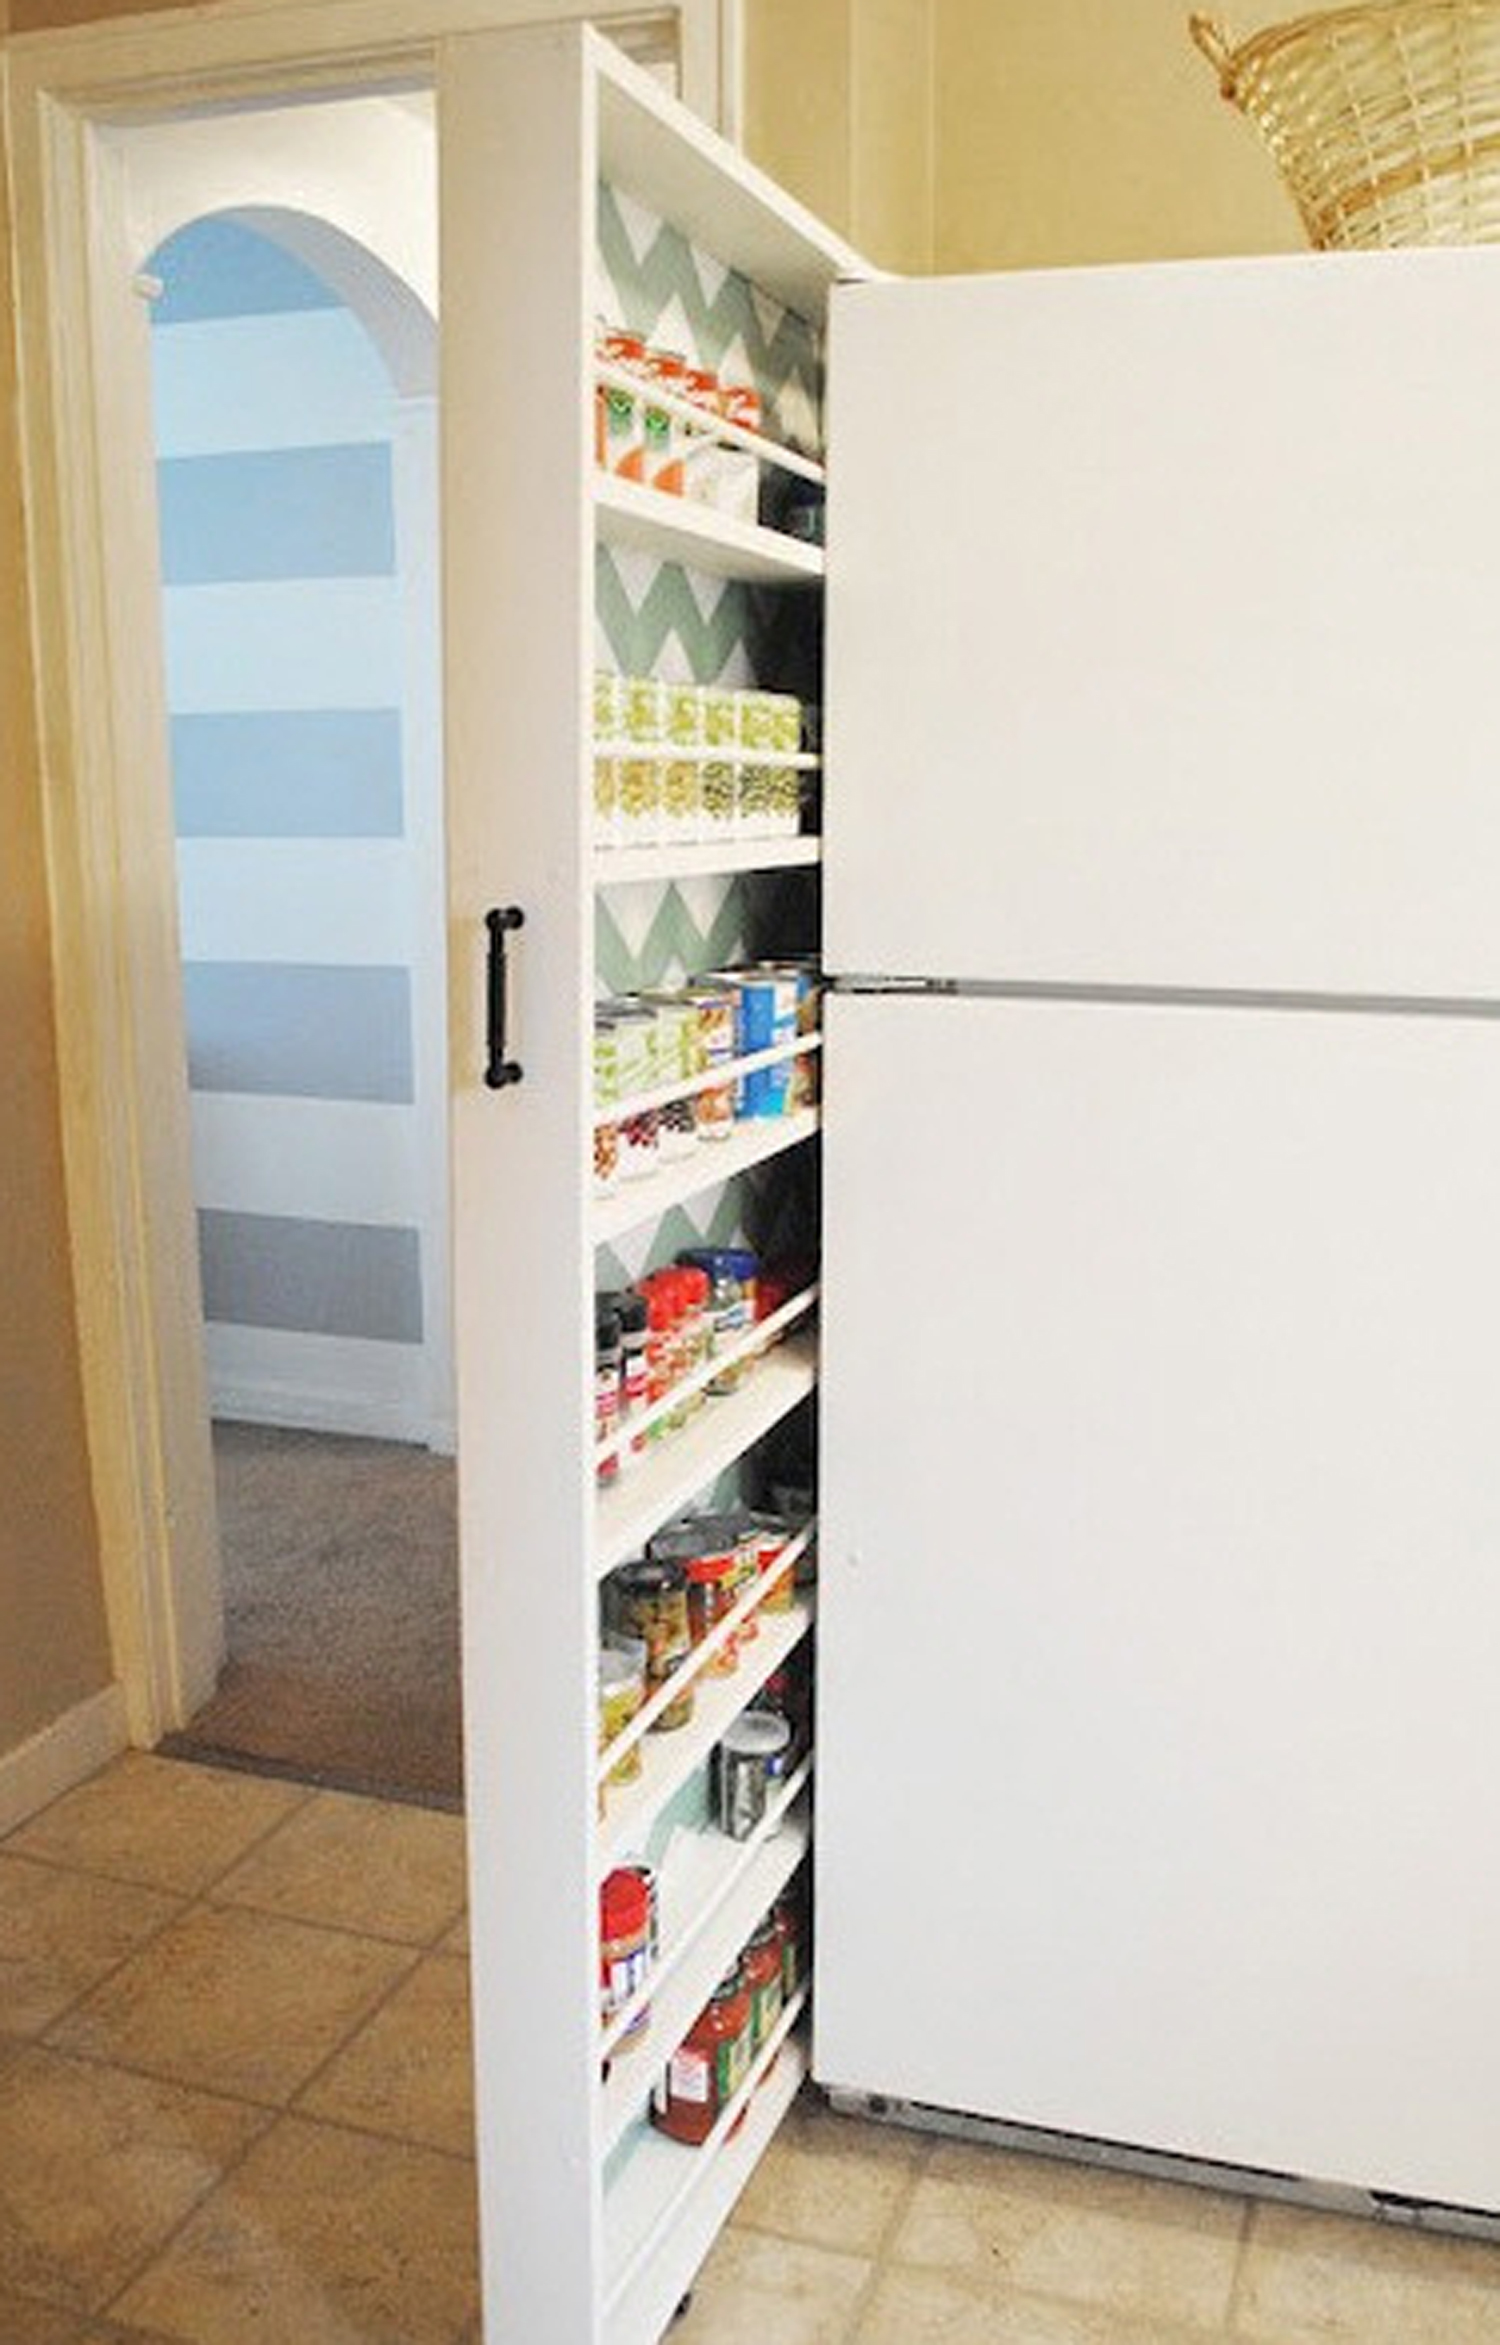 Αν δεν έχεις αρκετό χώρο στα ντουλάπια της κουζίνας, αυτή είναι μια ιδανική λύση